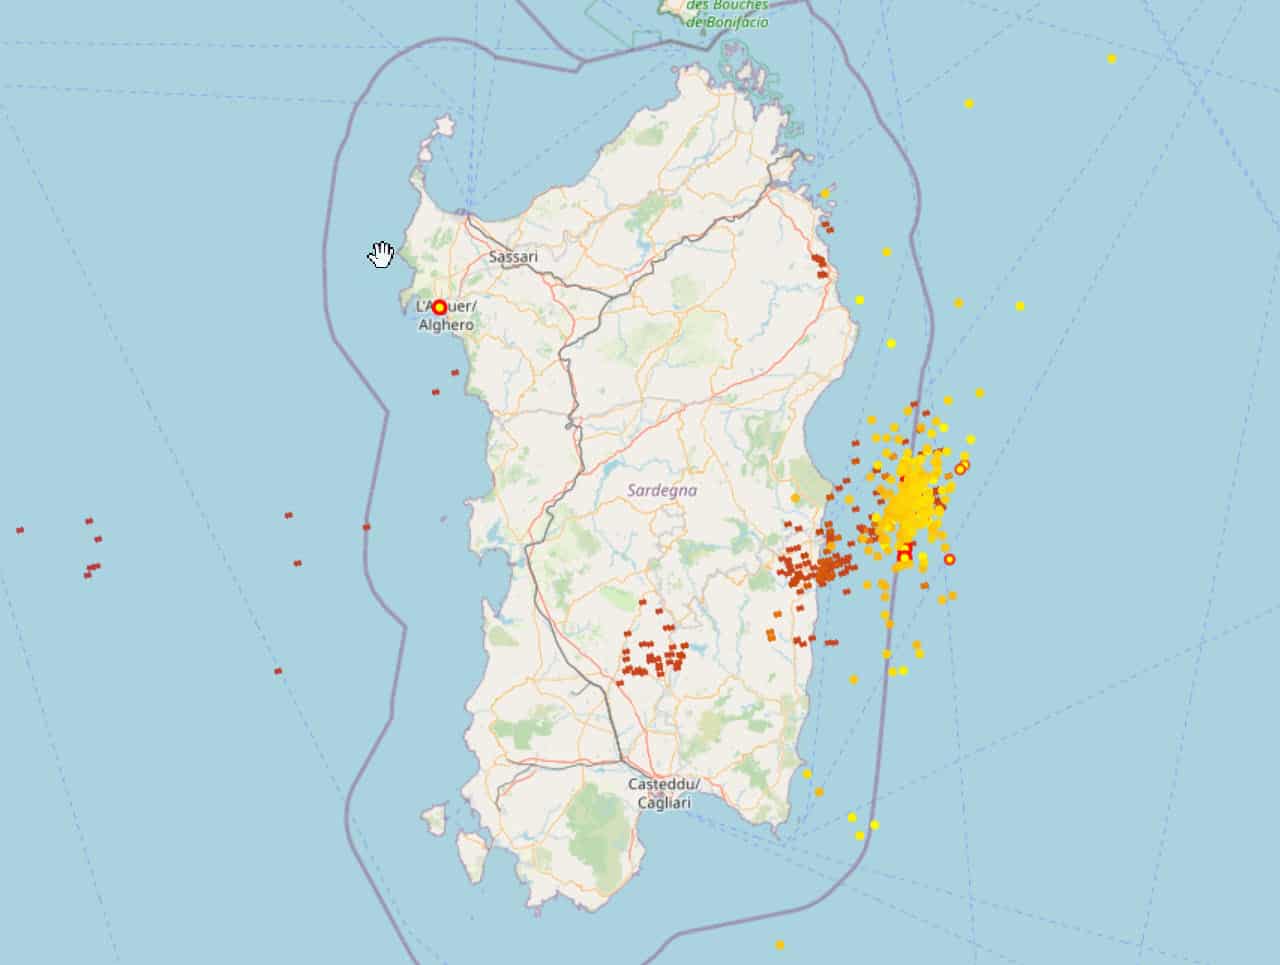 2021 08 25 18 07 19 - Aggiornamento, Meteo Sardegna: escalation di forti temporali attorno alla regione. Focus e previsioni